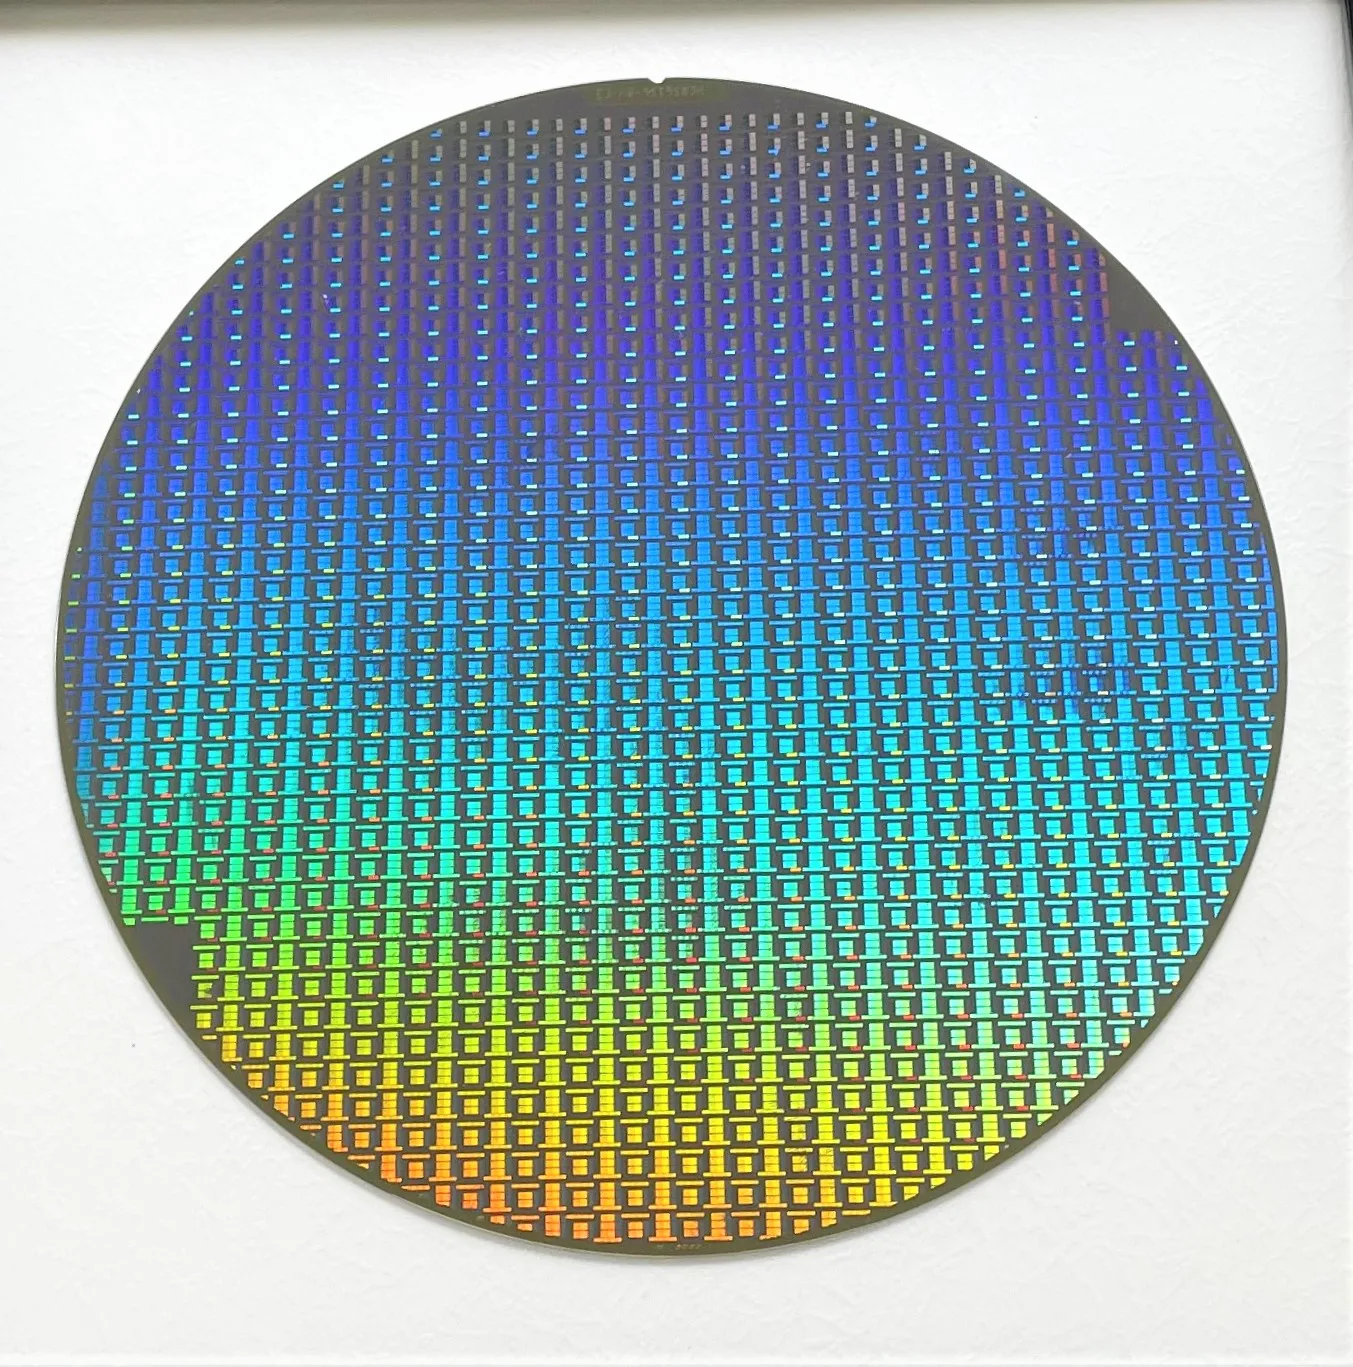 SMIC-пластина CMOS-кремниевая пластина, полупроводниковый чип для литографии, интегральная схема